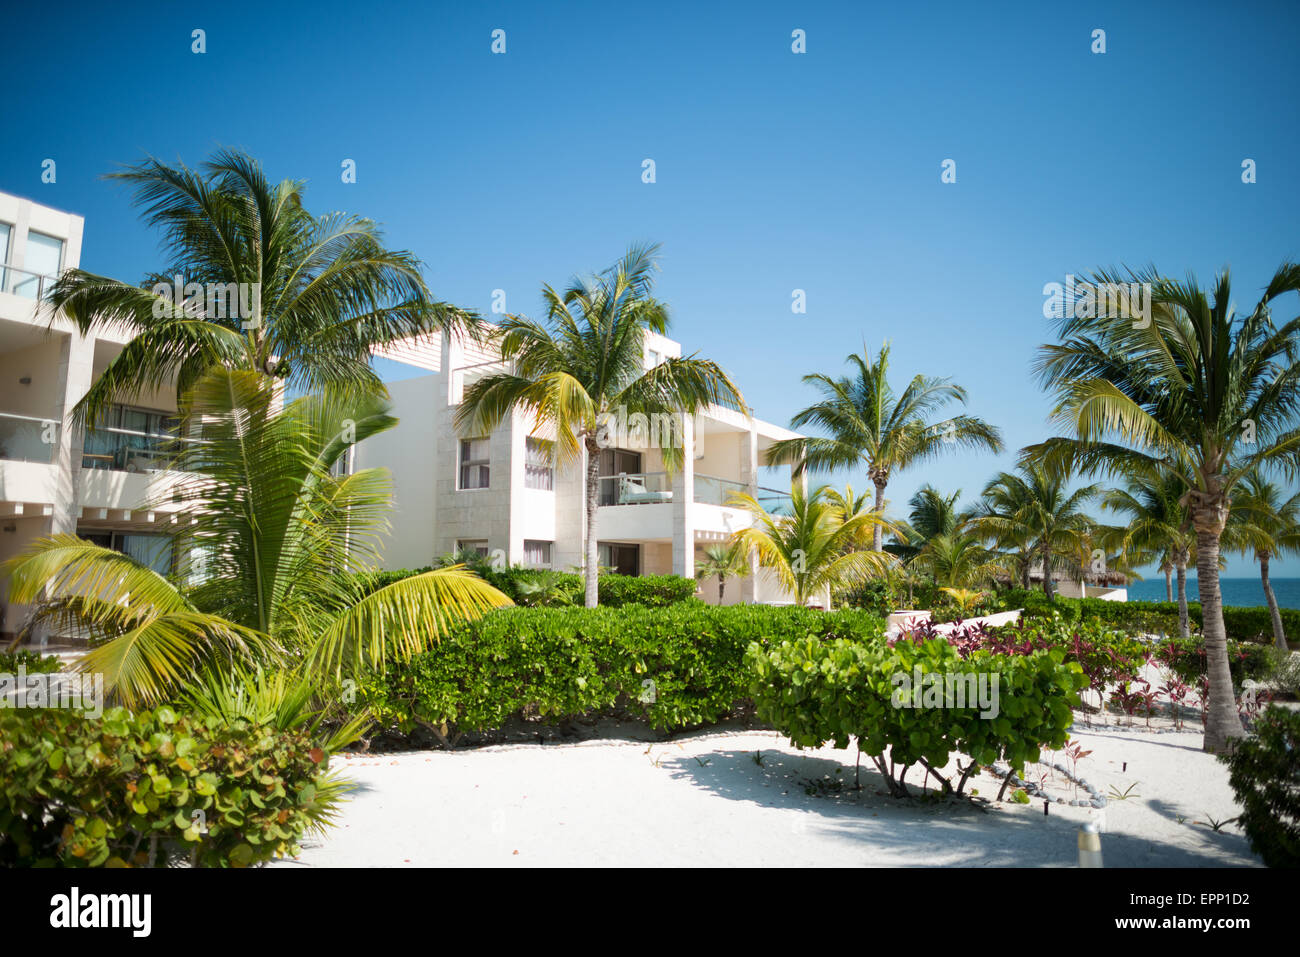 Le bien-aimé, de l'hôtel Playa Mujeres, Mexique, est situé juste au nord de Cancun. C'est un complexe de luxe, inclusive beach resort appartenant au groupe d'excellence. Banque D'Images